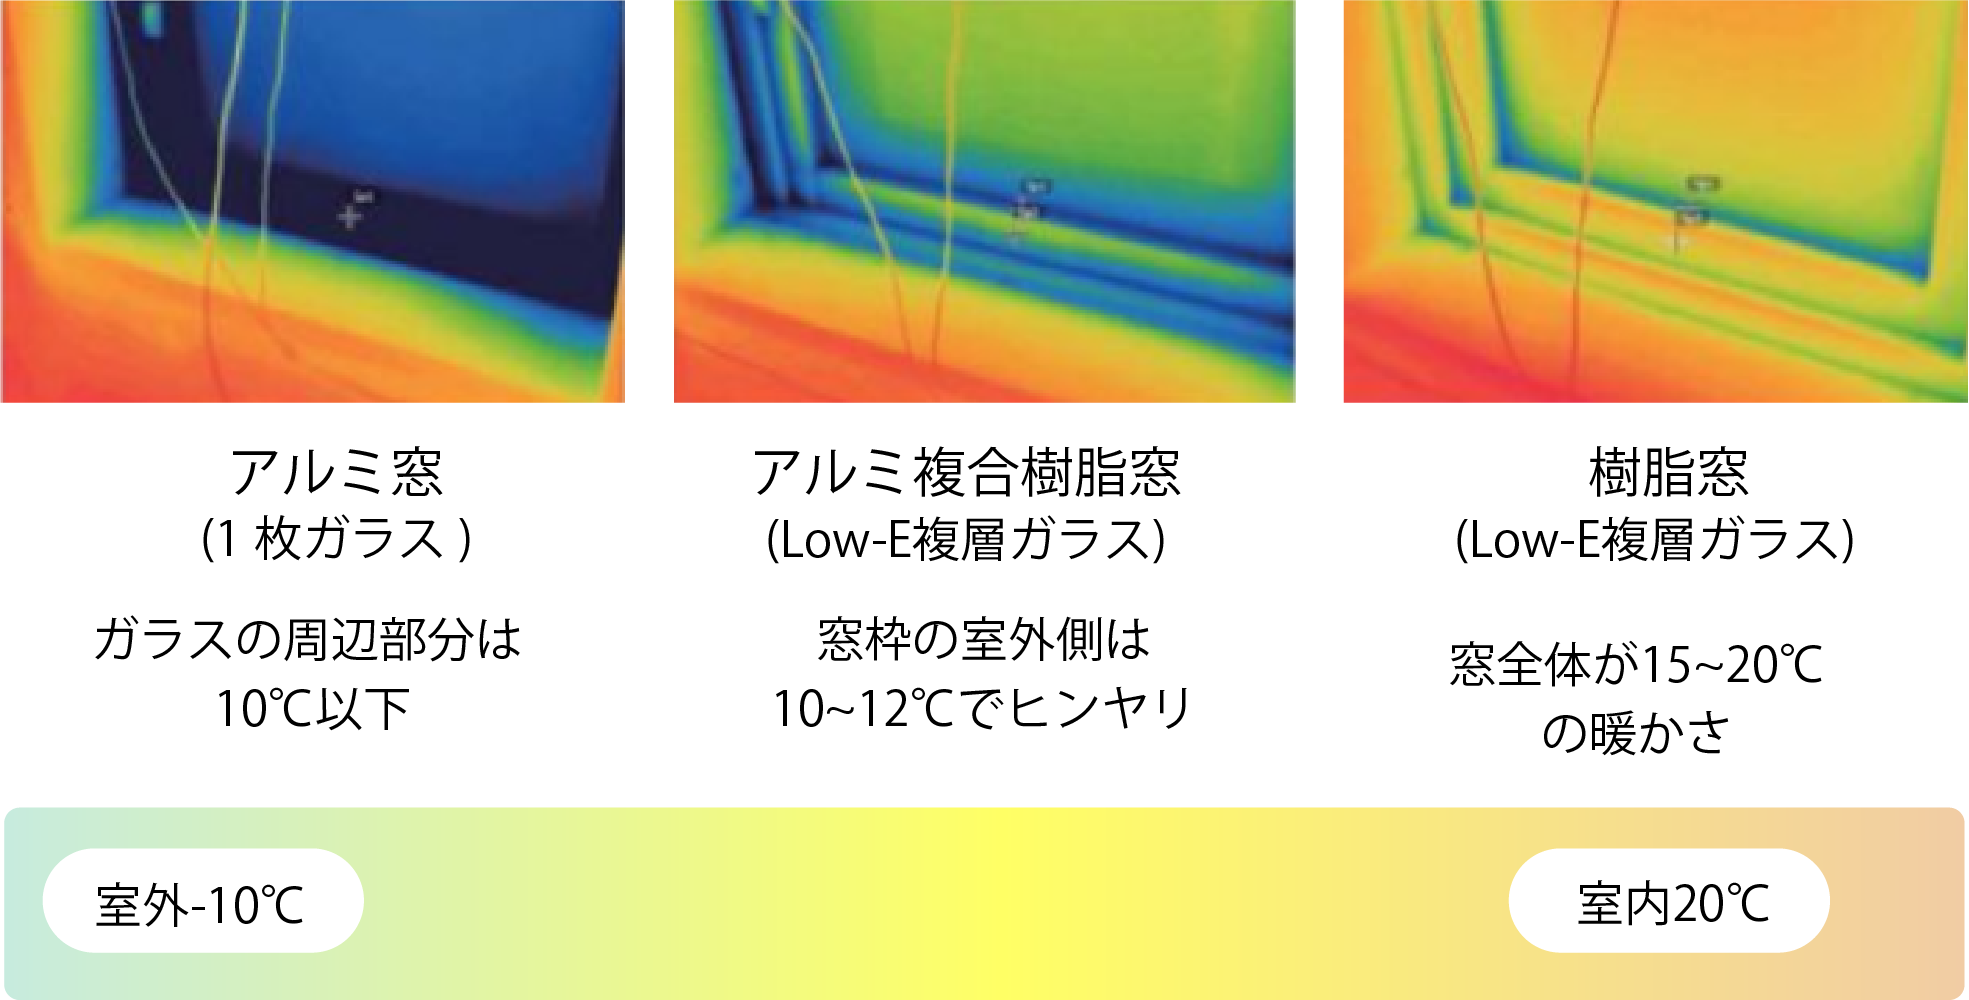 サーモグラフィーによる窓の表面温度比較